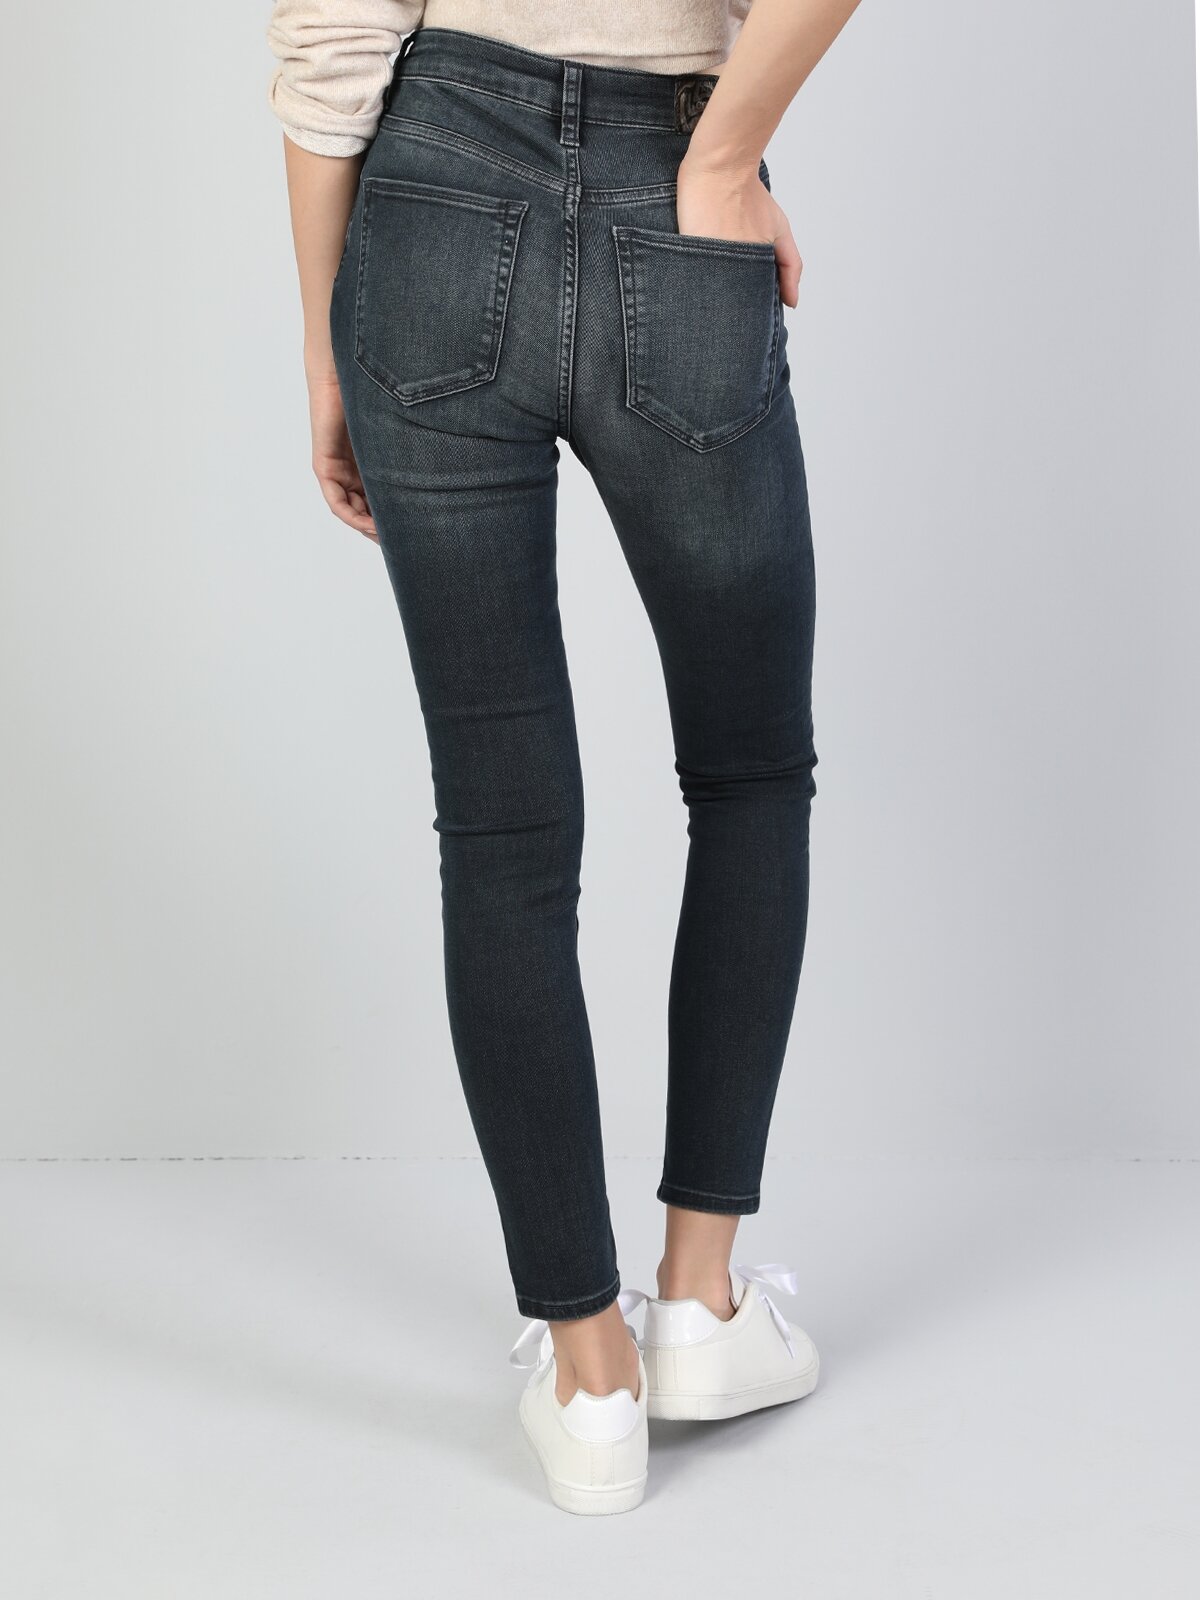 Colins 760 Dıana Yüksek Bel Dar Paça Super Slim Fit Gri Kadın Jean Pantolon. 2